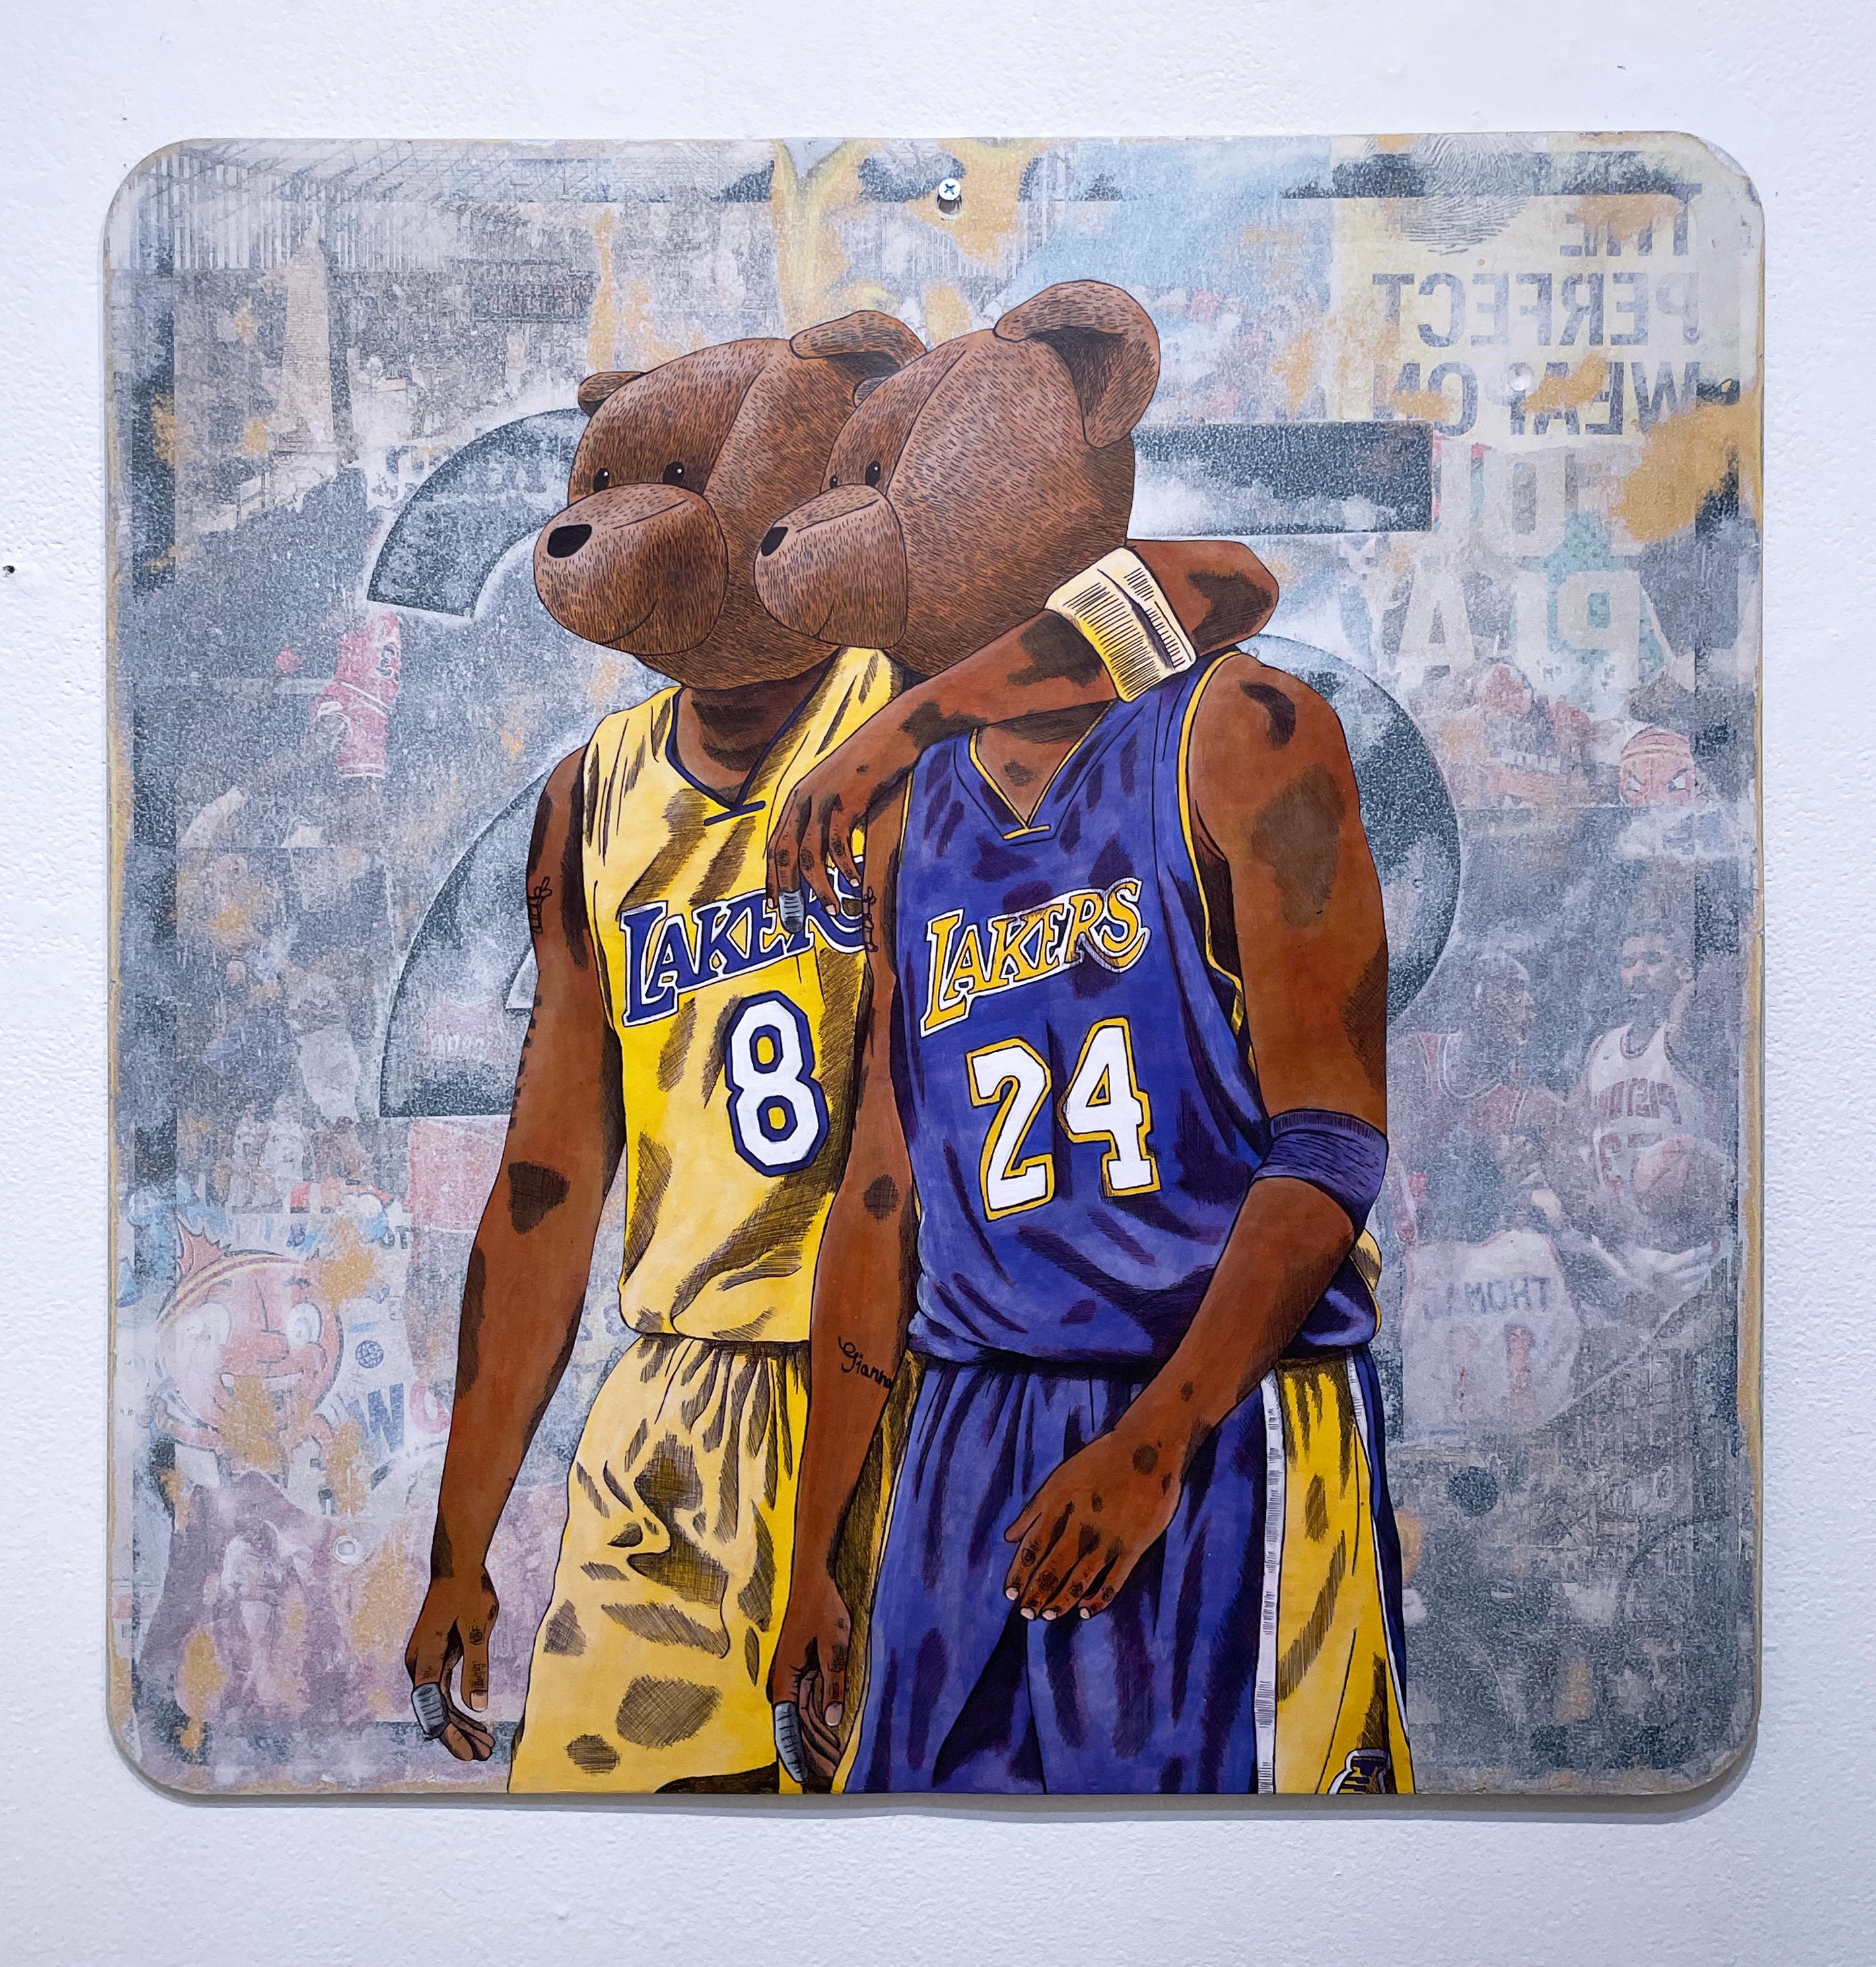 Kobe, 2023, Mamba Mentality, LA LAKERS Kobe Bryant basketball jersey #24 #8 - Painting by Sean 9 Lugo